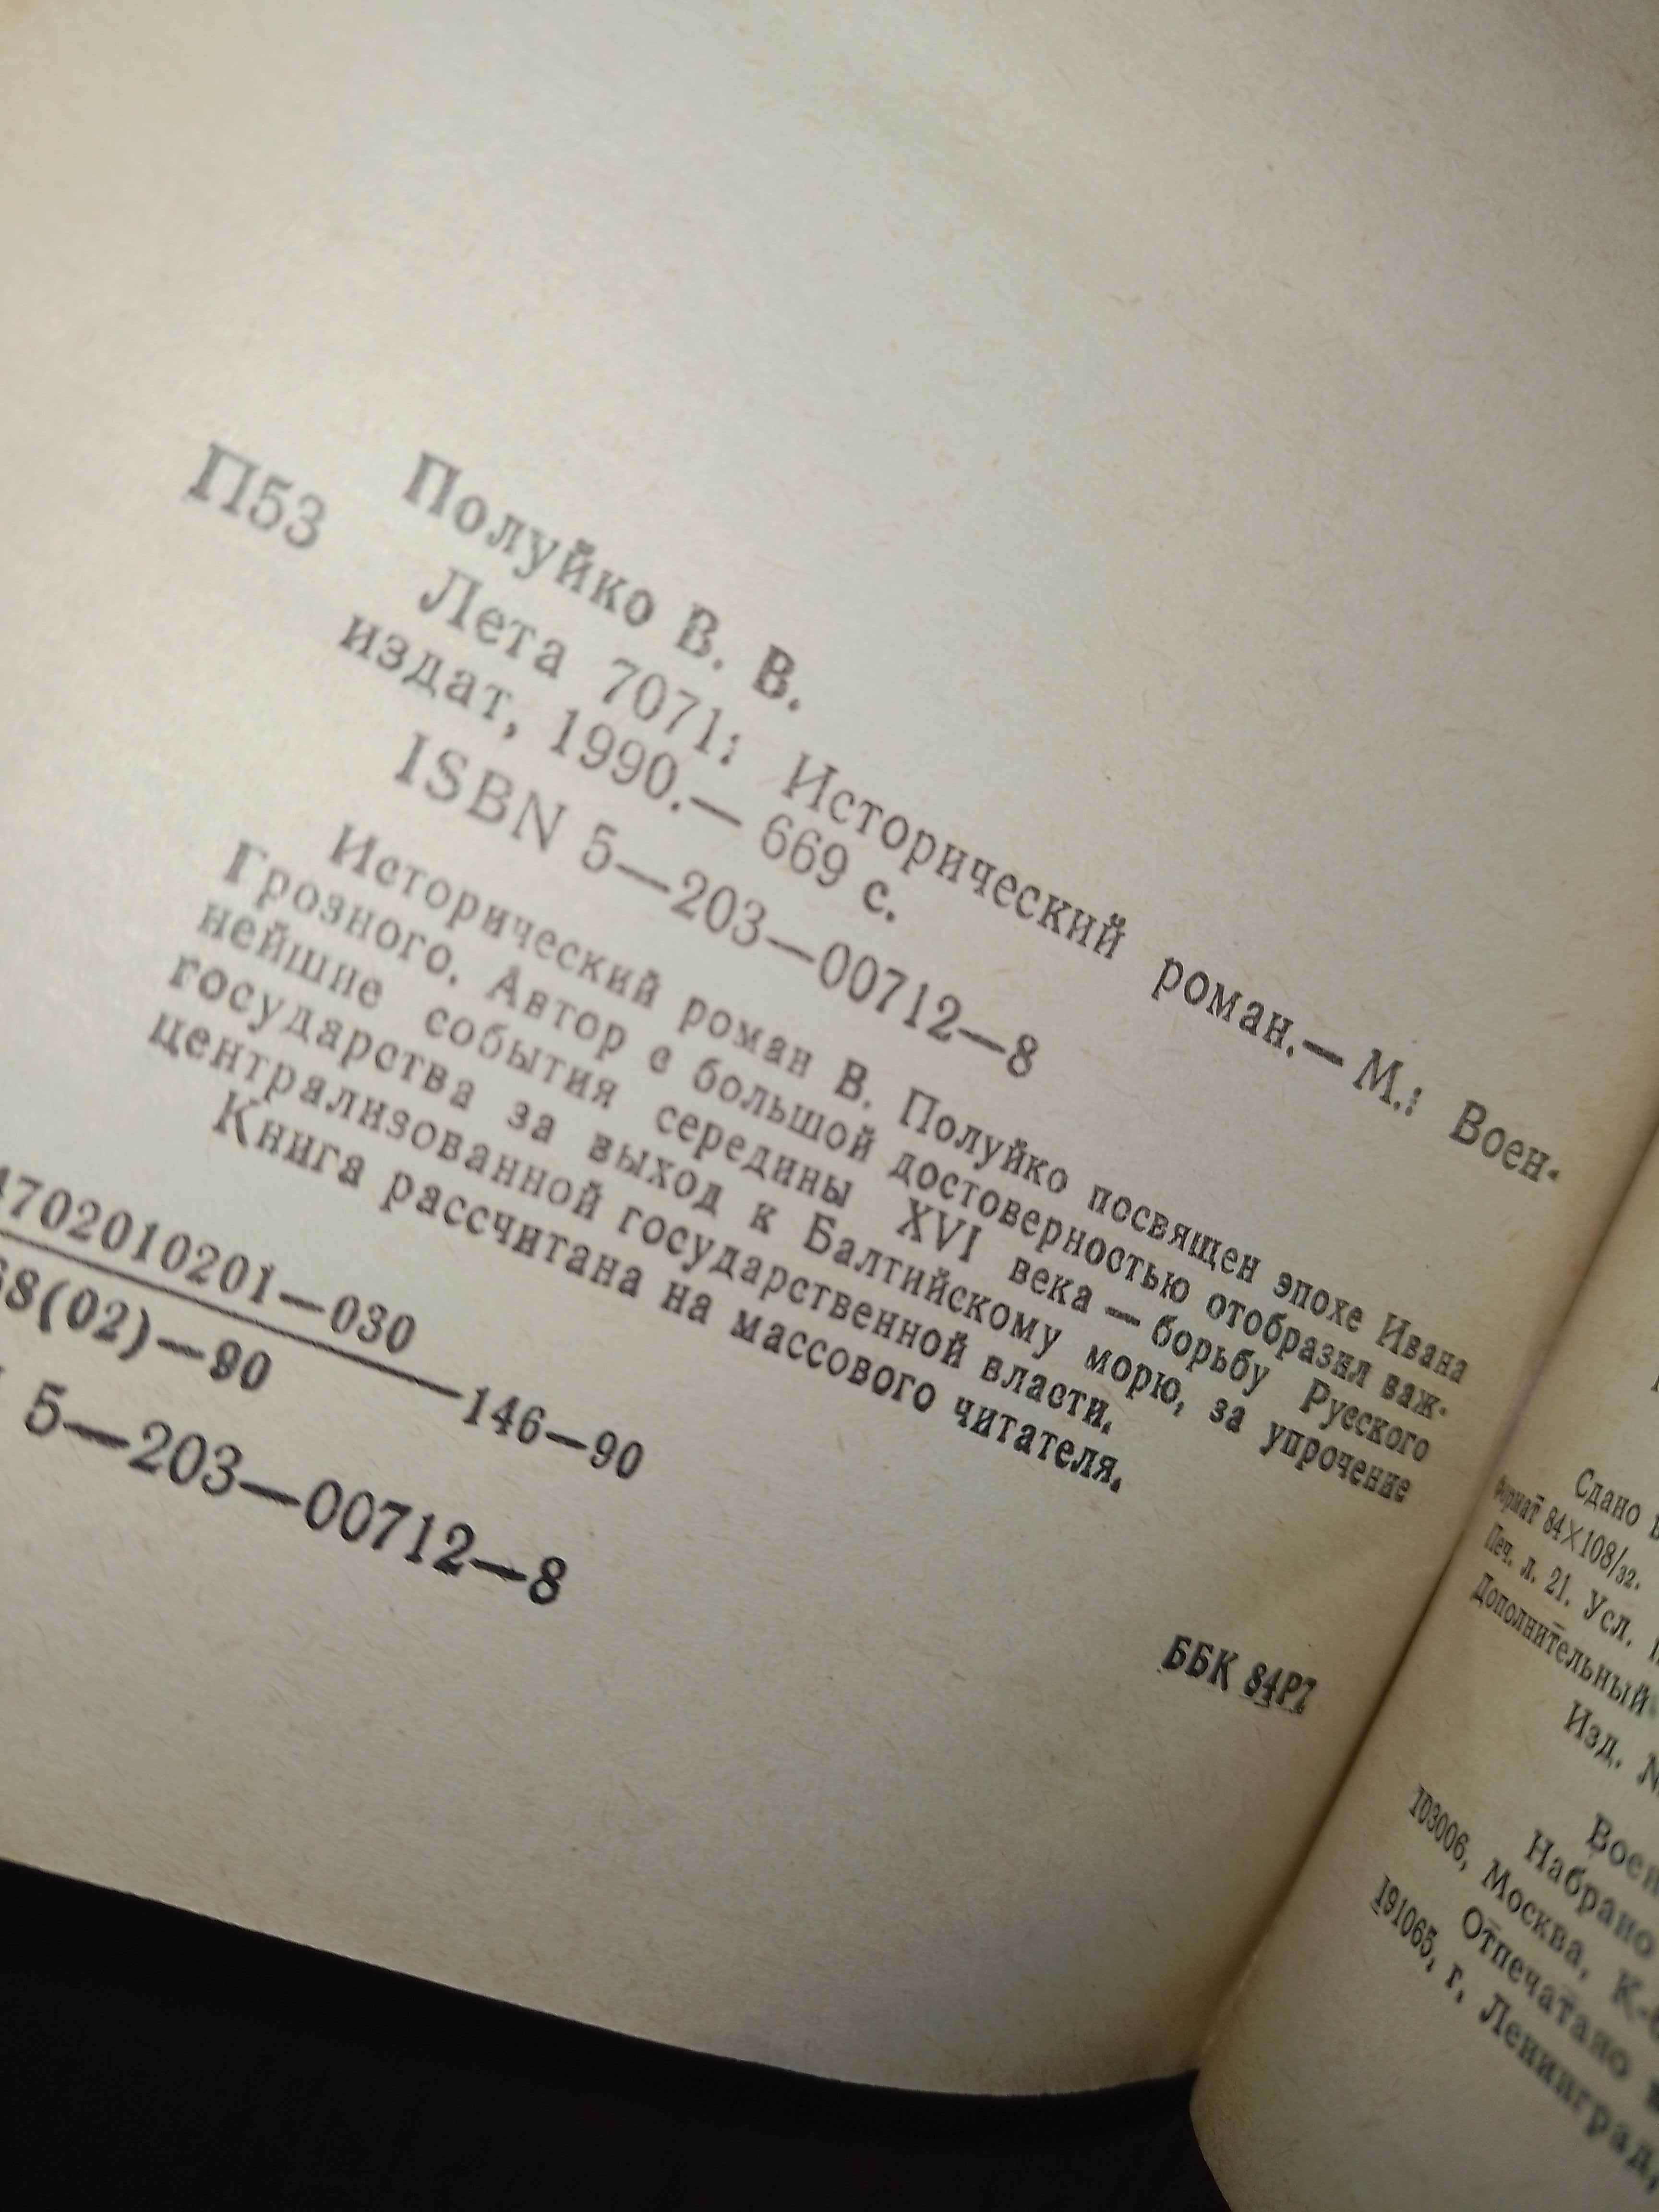 Історичні книги, домашня бібліотека "Разбойник Кармелюк" та ін.